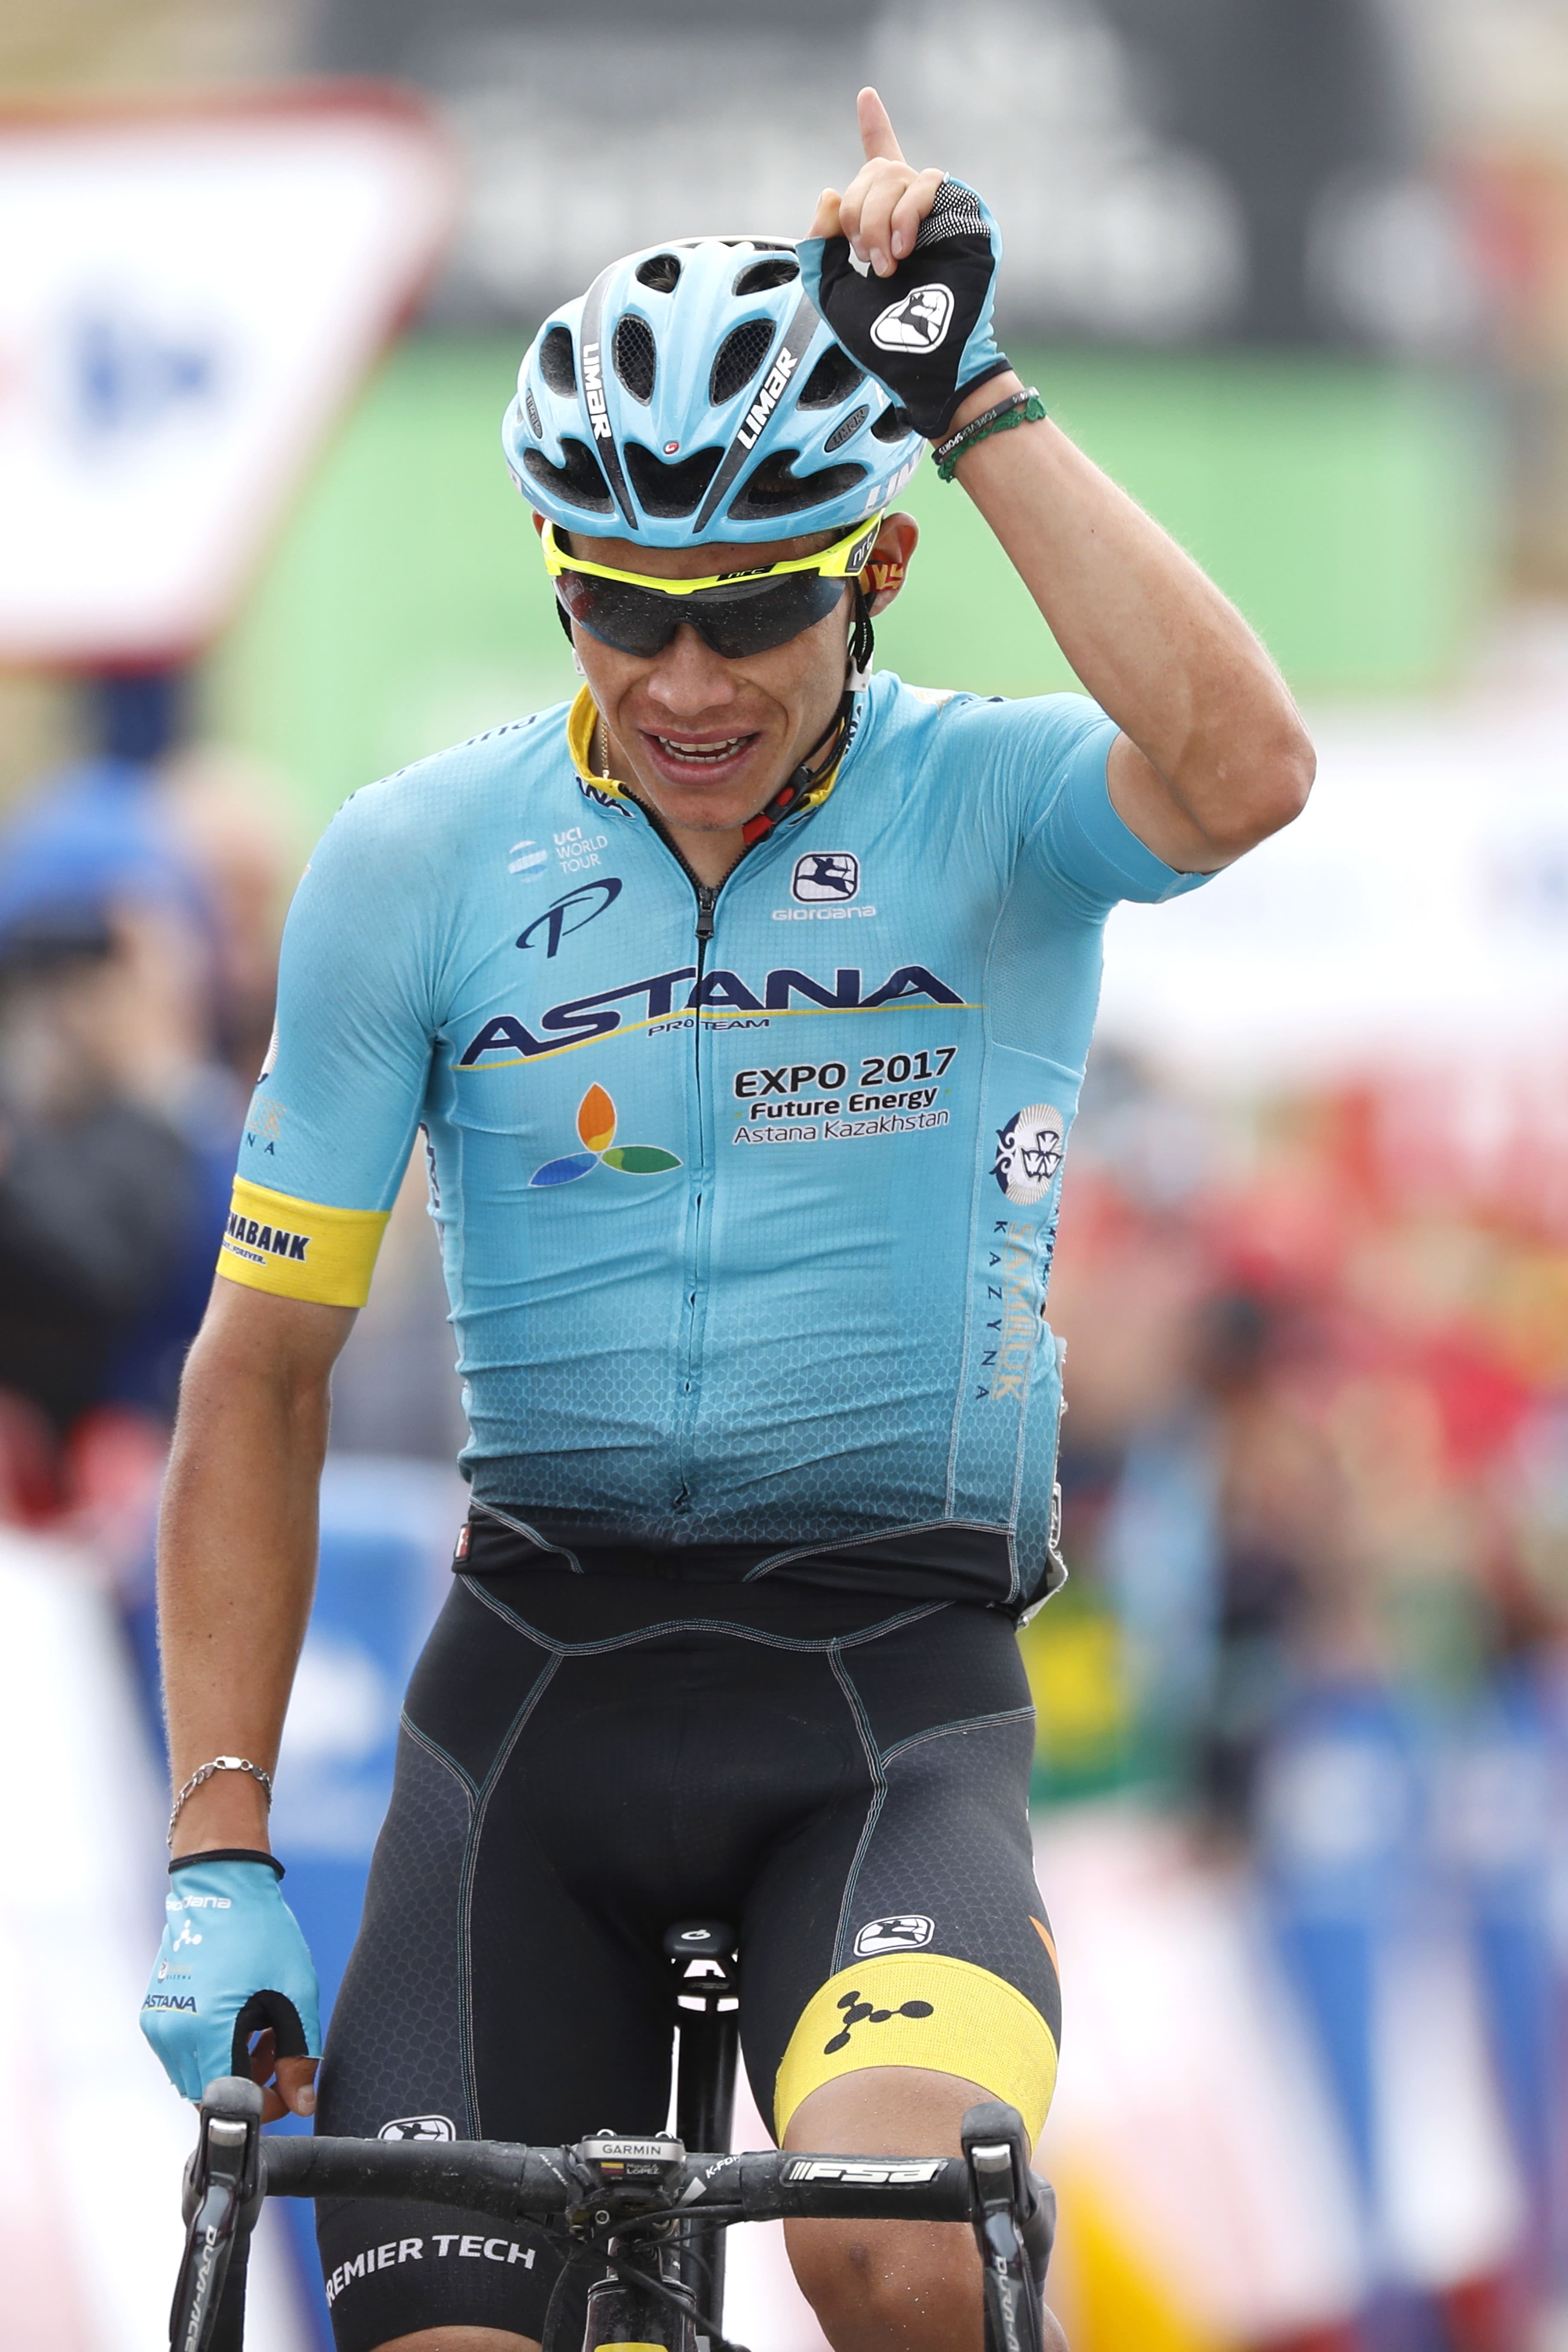 4 Tour de l'Avenir winners who delivered - de velo